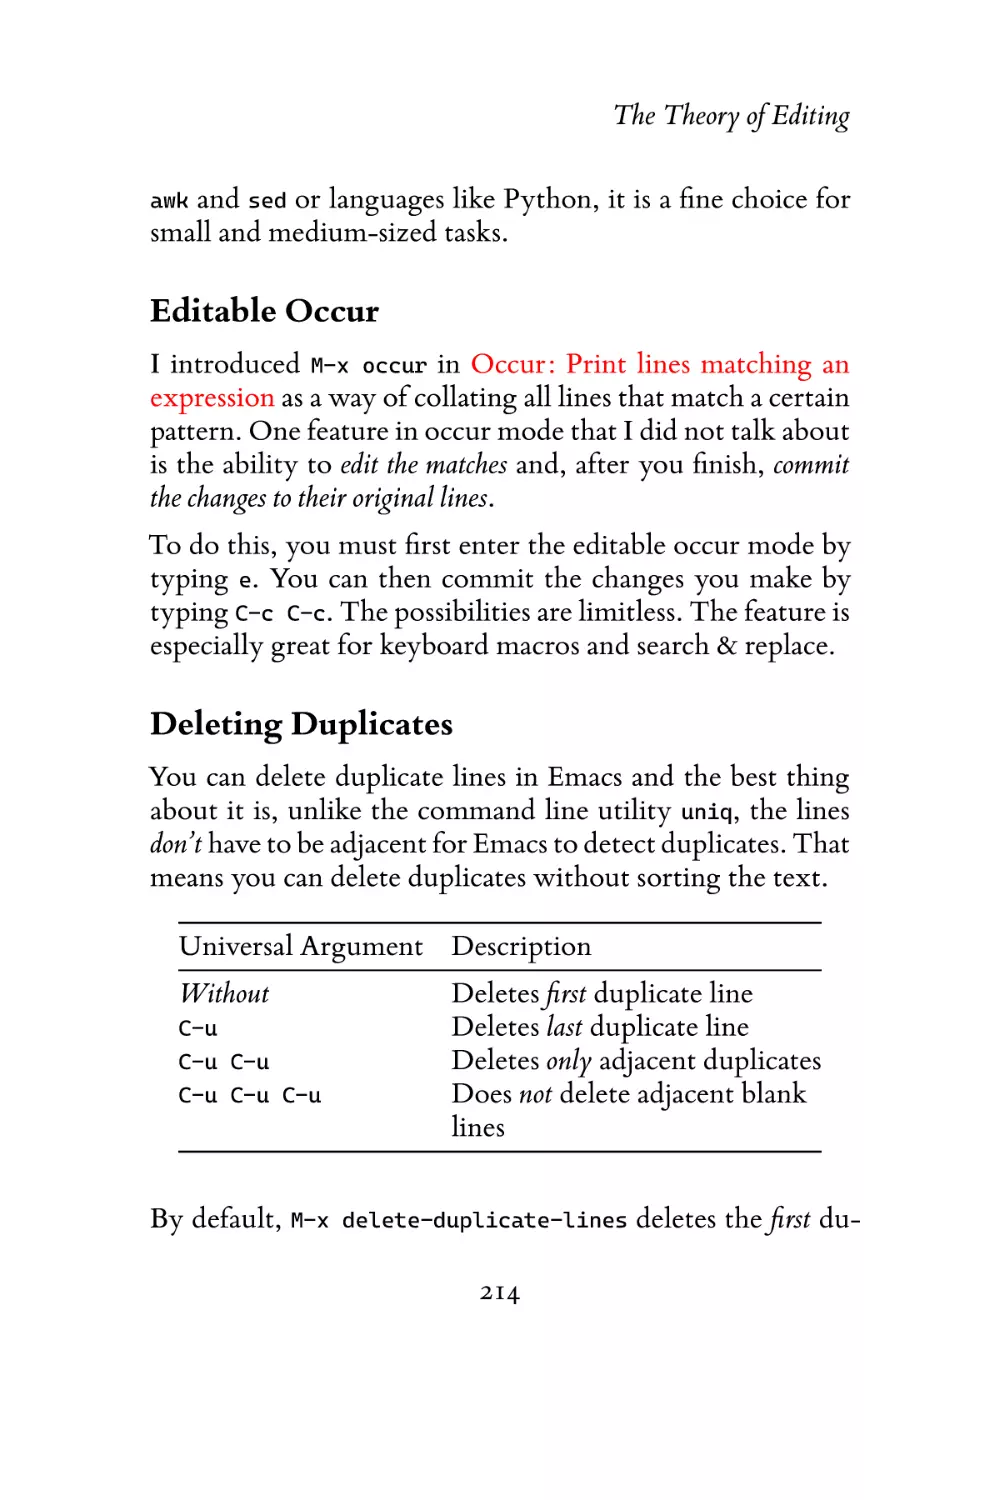 Editable Occur
Deleting Duplicates